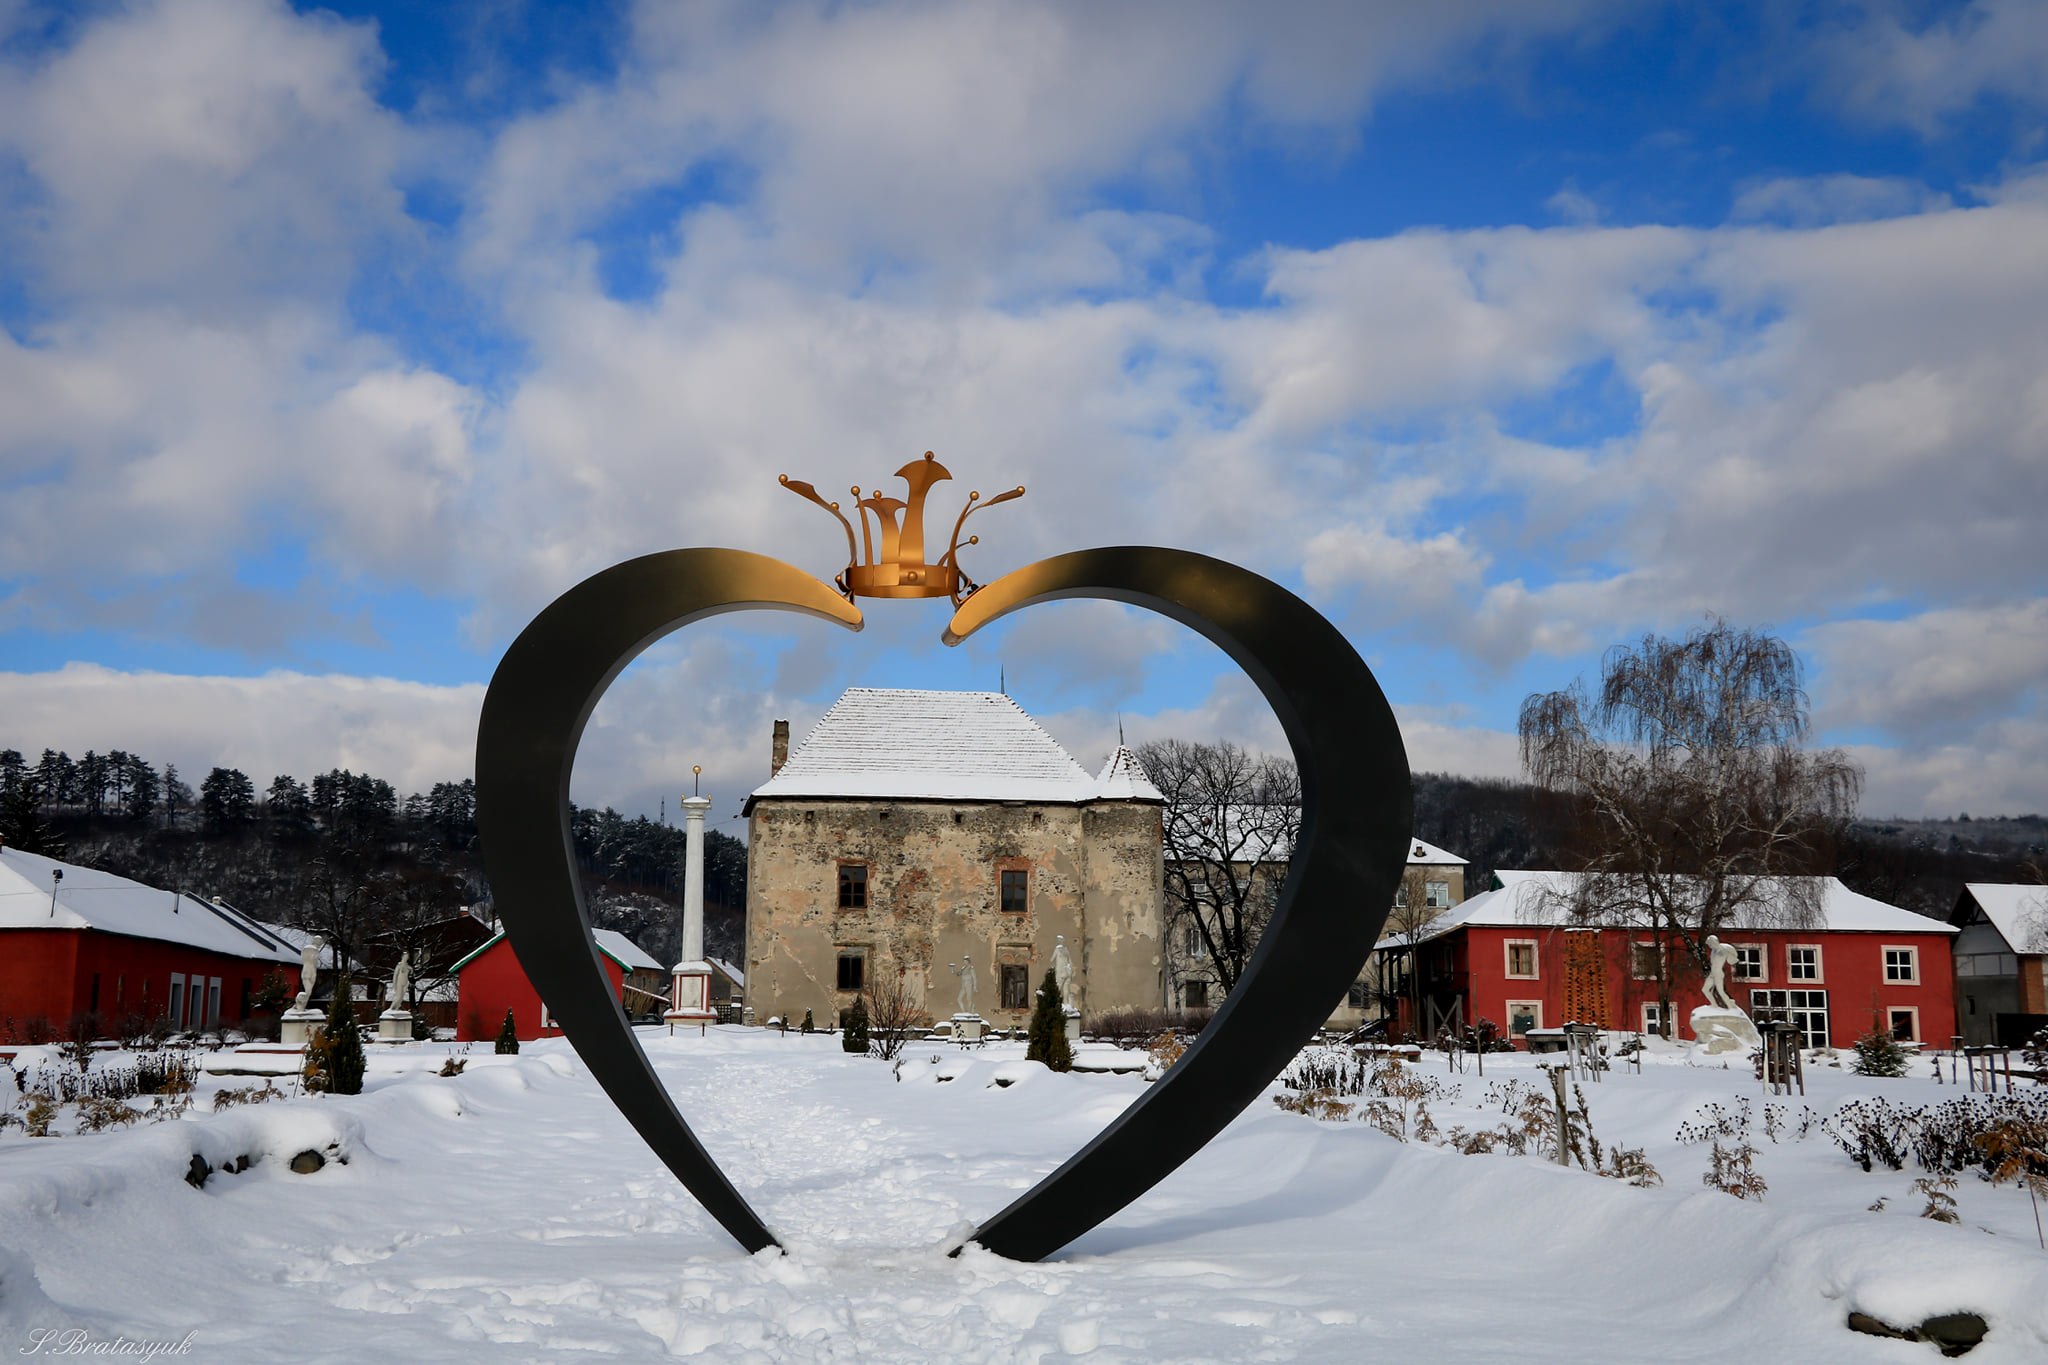 О замке Святого Николая в селе Чинадиево говорят, что это замок любви, на День Валентина, это прекрасное место для визита во время отдыха в Закарпатье.